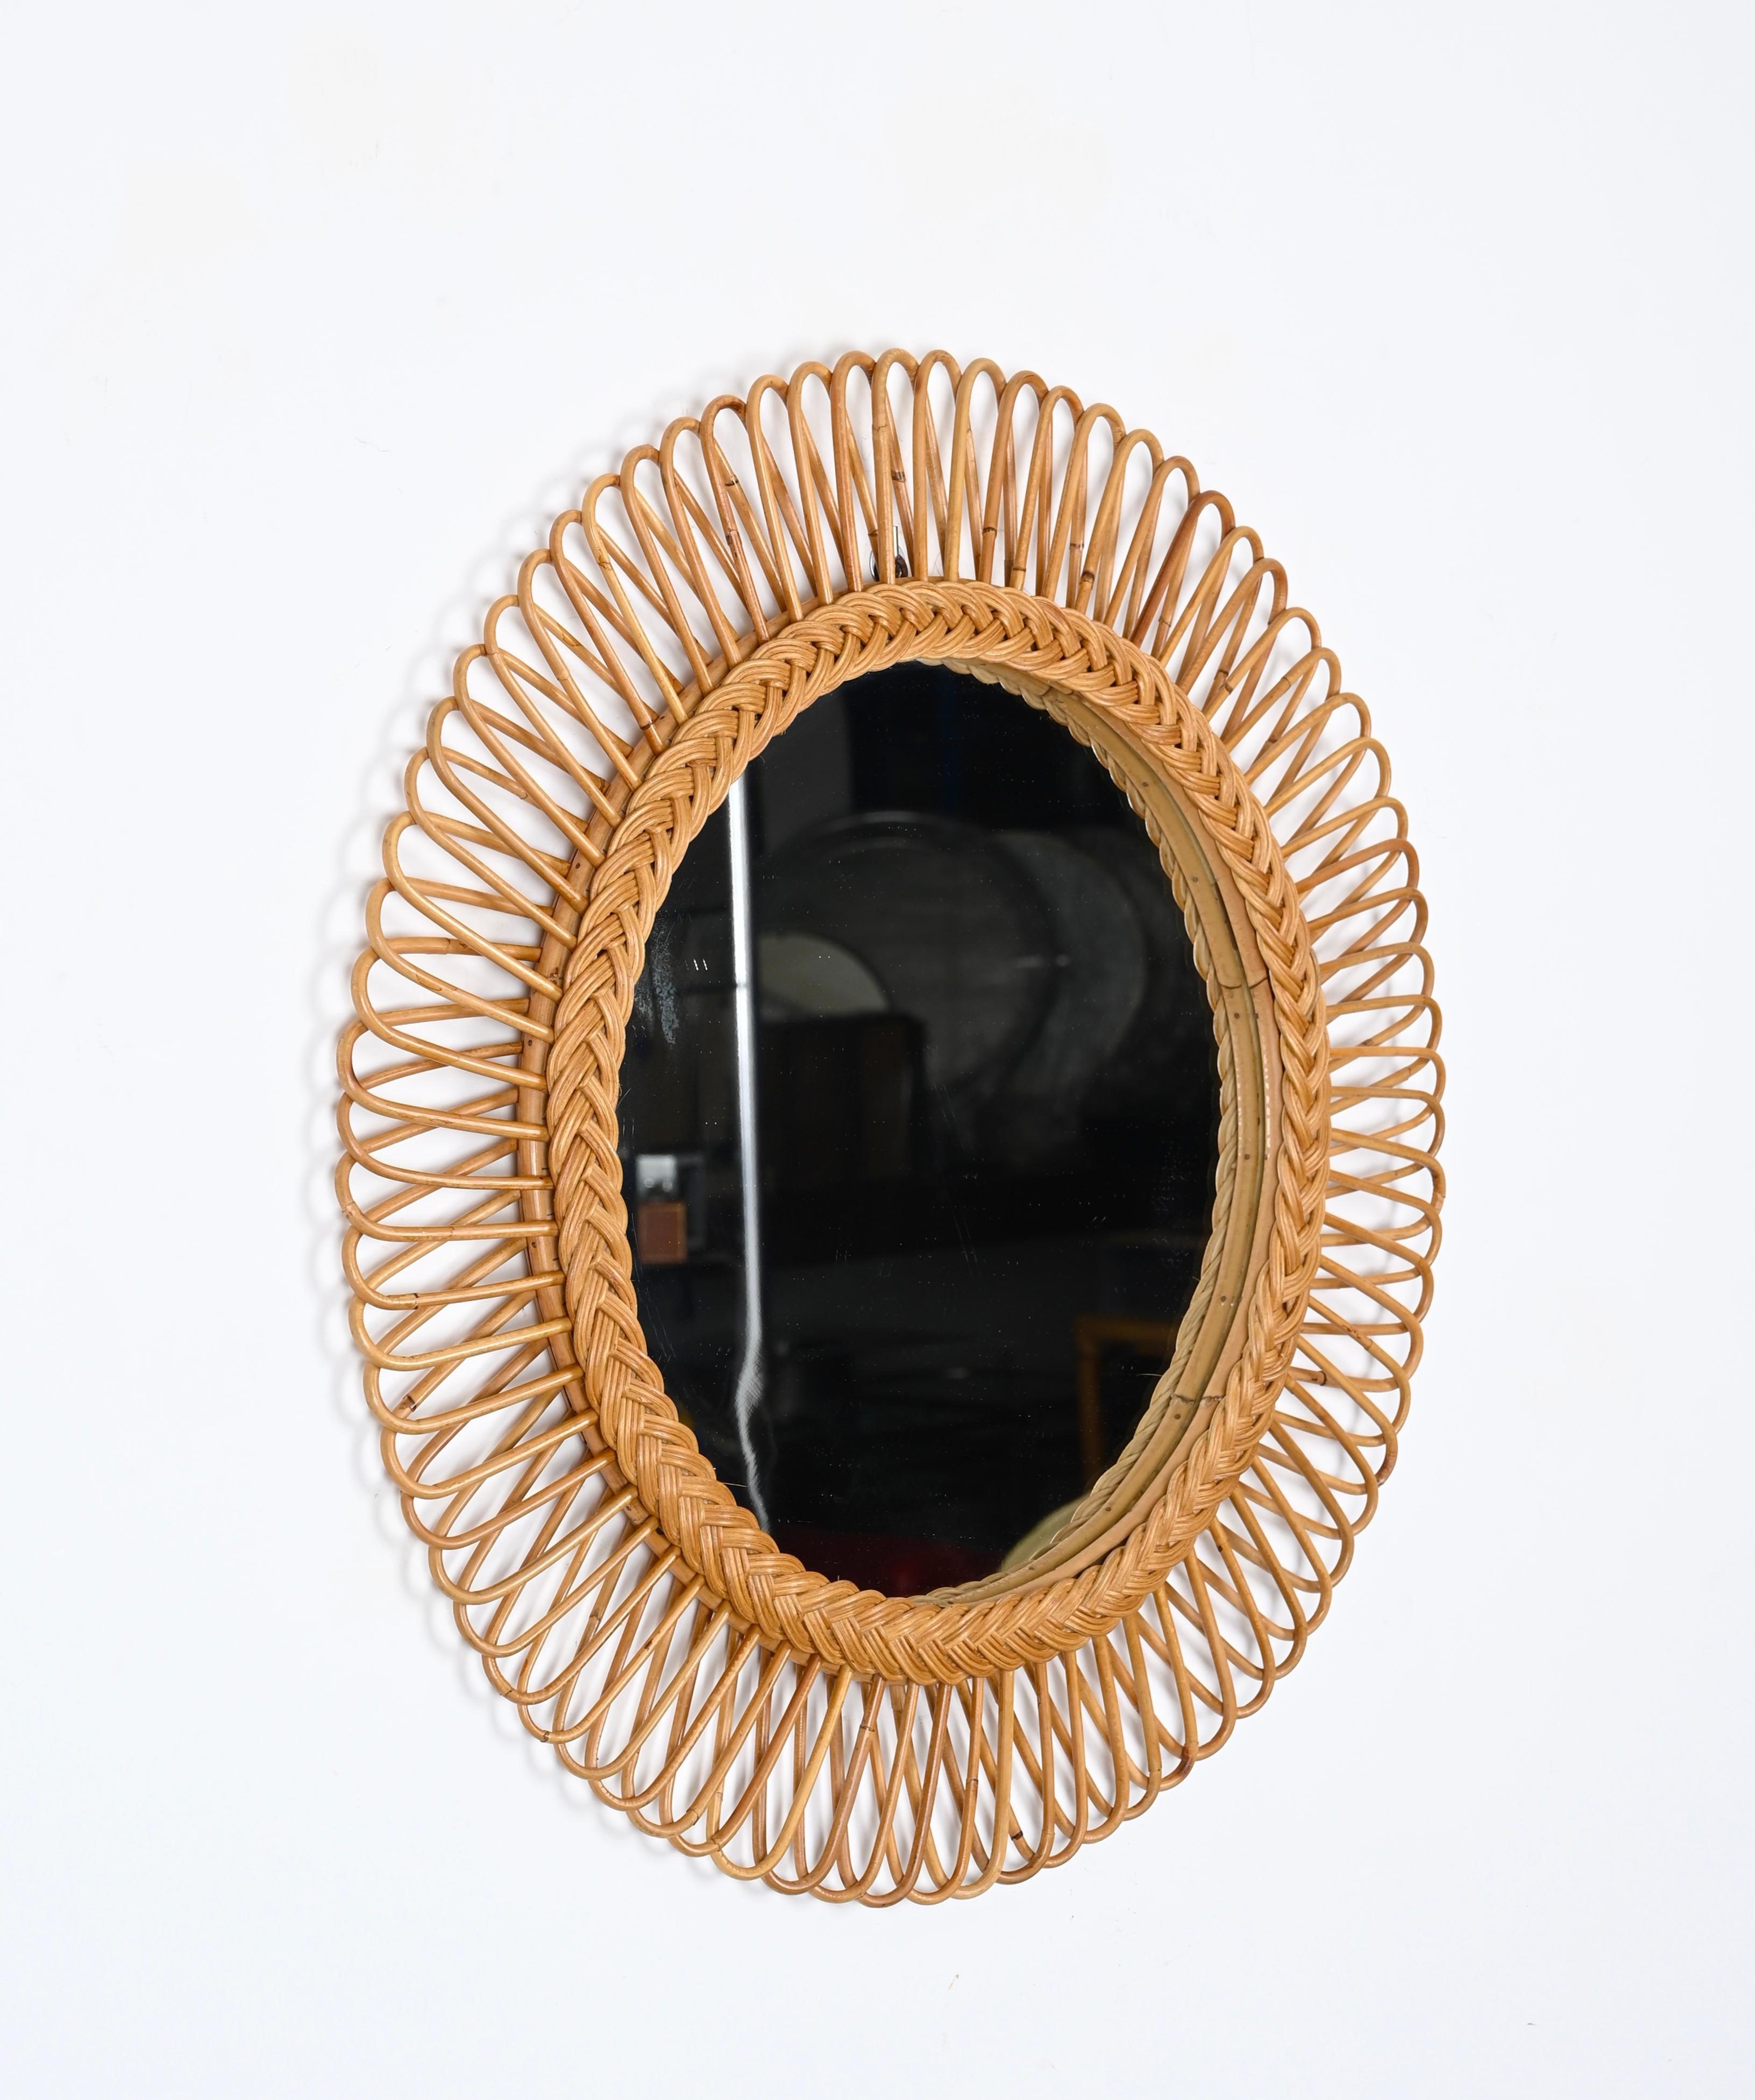 Mid-Century Rattan, Bamboo and Wicker Italian Round Mirror, Franco Albini 1970s For Sale 4